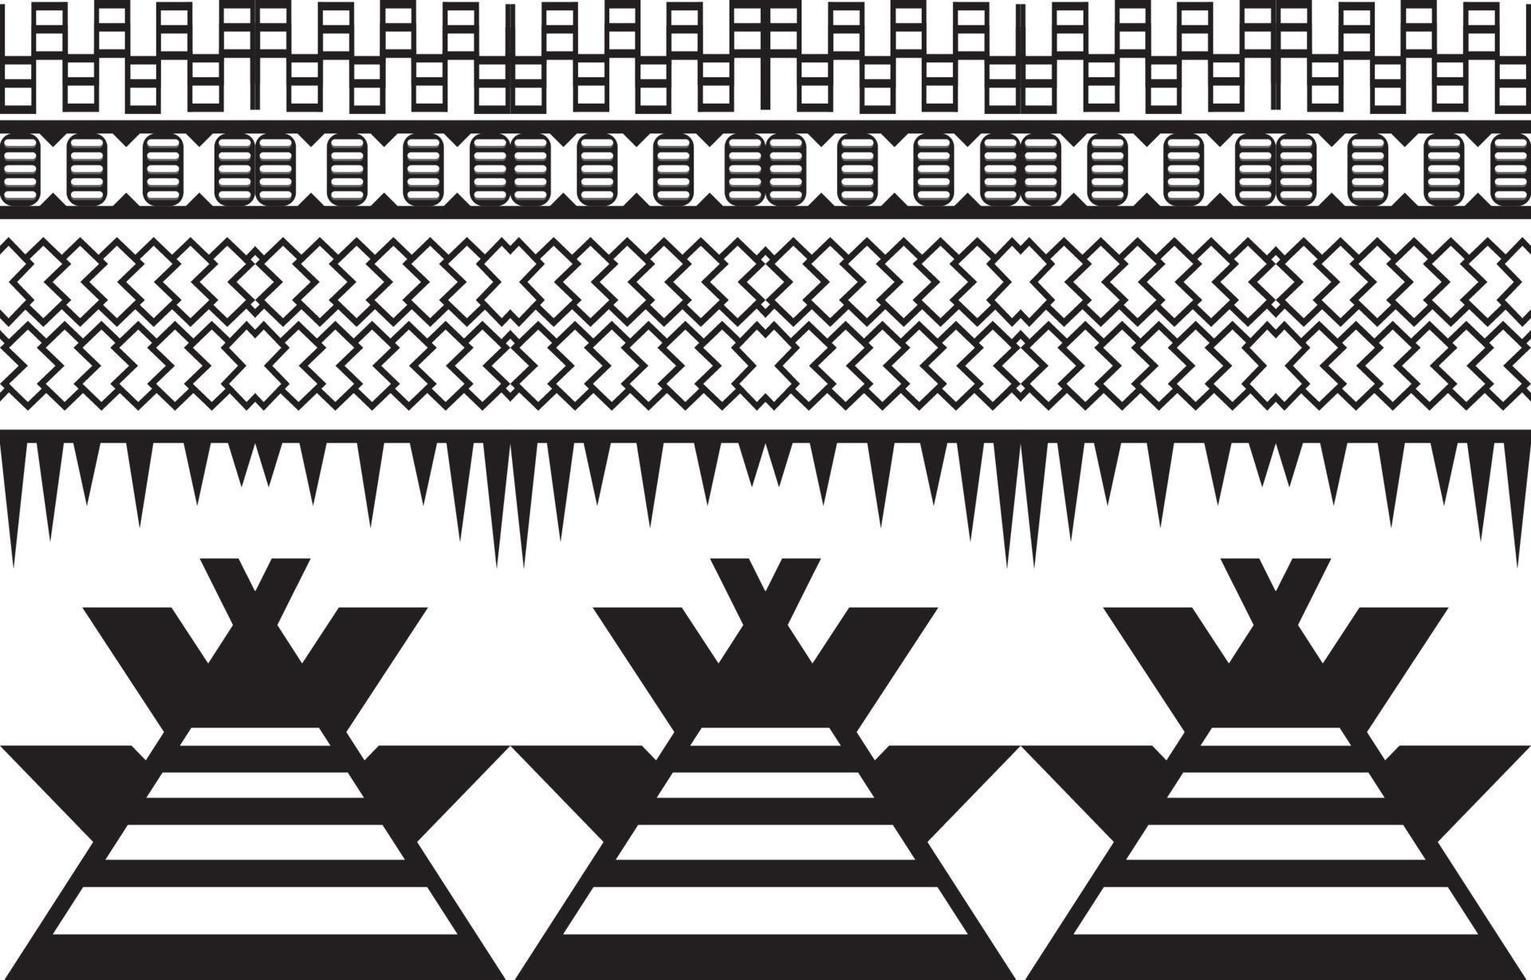 diseño de patrones geométricos étnicos abstractos en blanco y negro tribales para fondo o papel tapiz.ilustración vectorial para imprimir patrones de tela, alfombras, camisas, disfraces, turbantes, sombreros, cortinas. vector